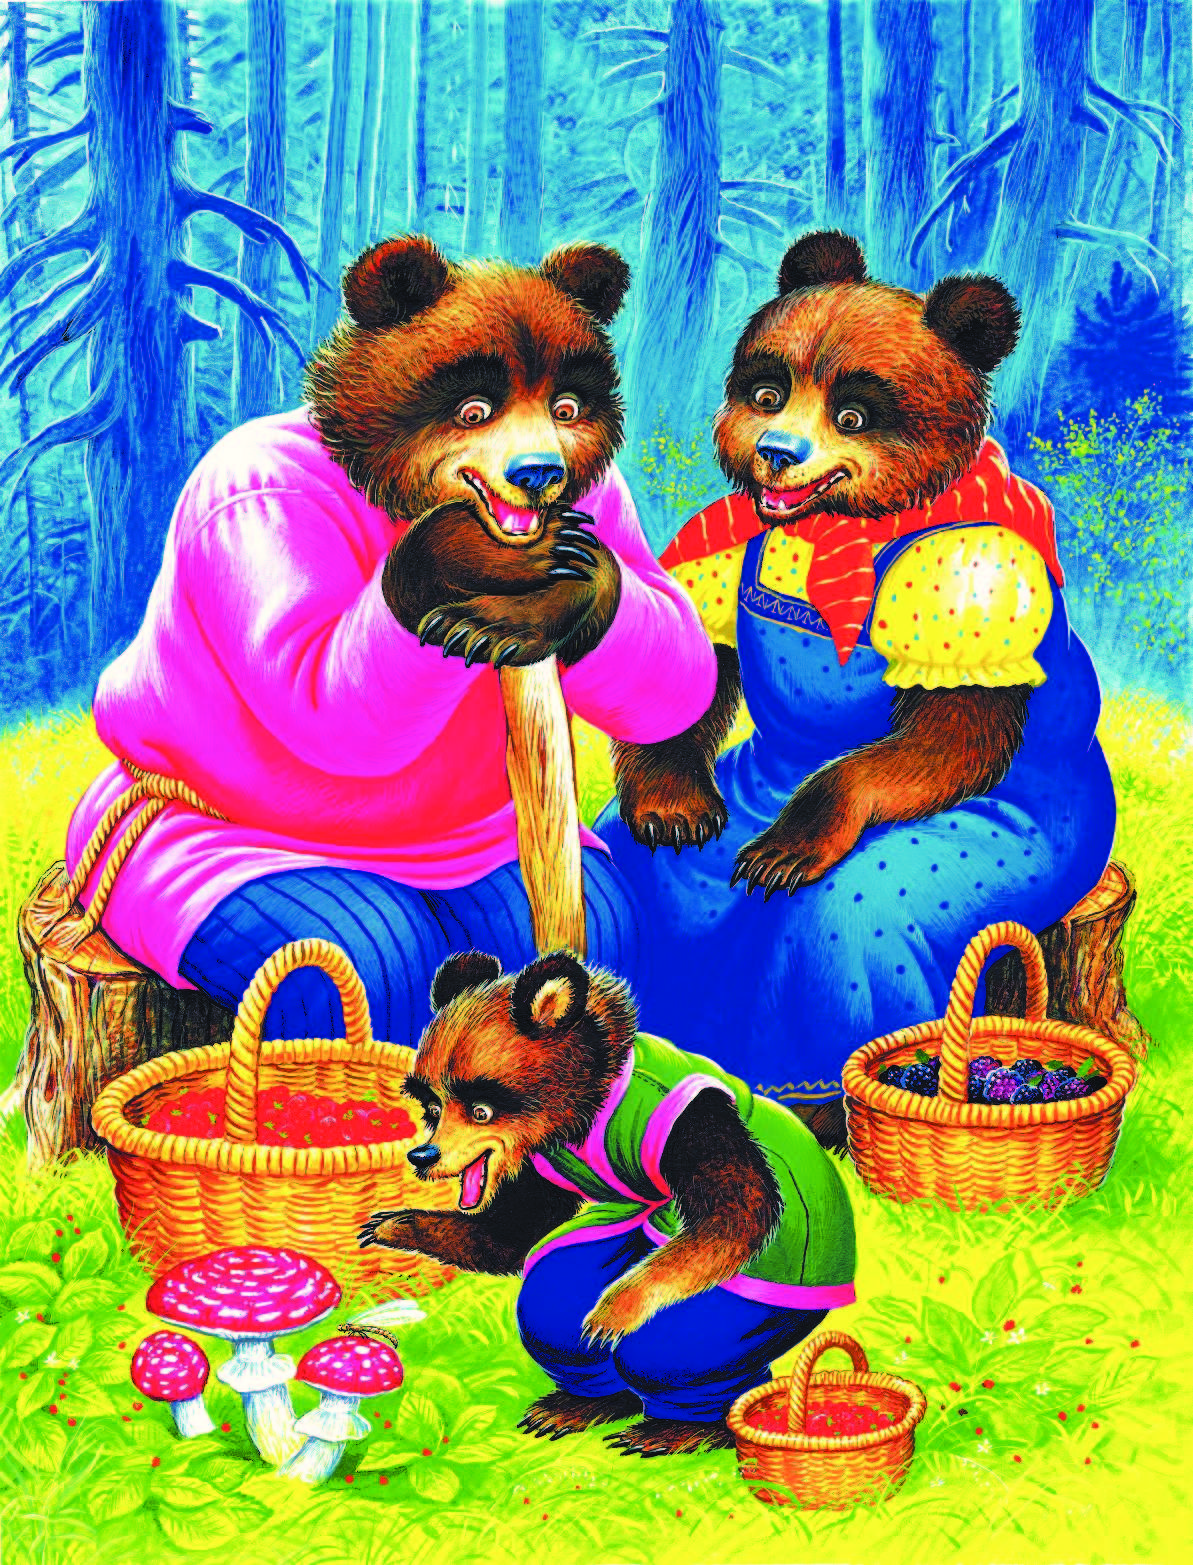 Том три медведя. Лев Николаевич толстой три медведя. Три медведя сказки. Три медведя русская народная сказка. Сказка Толстого три медведя.